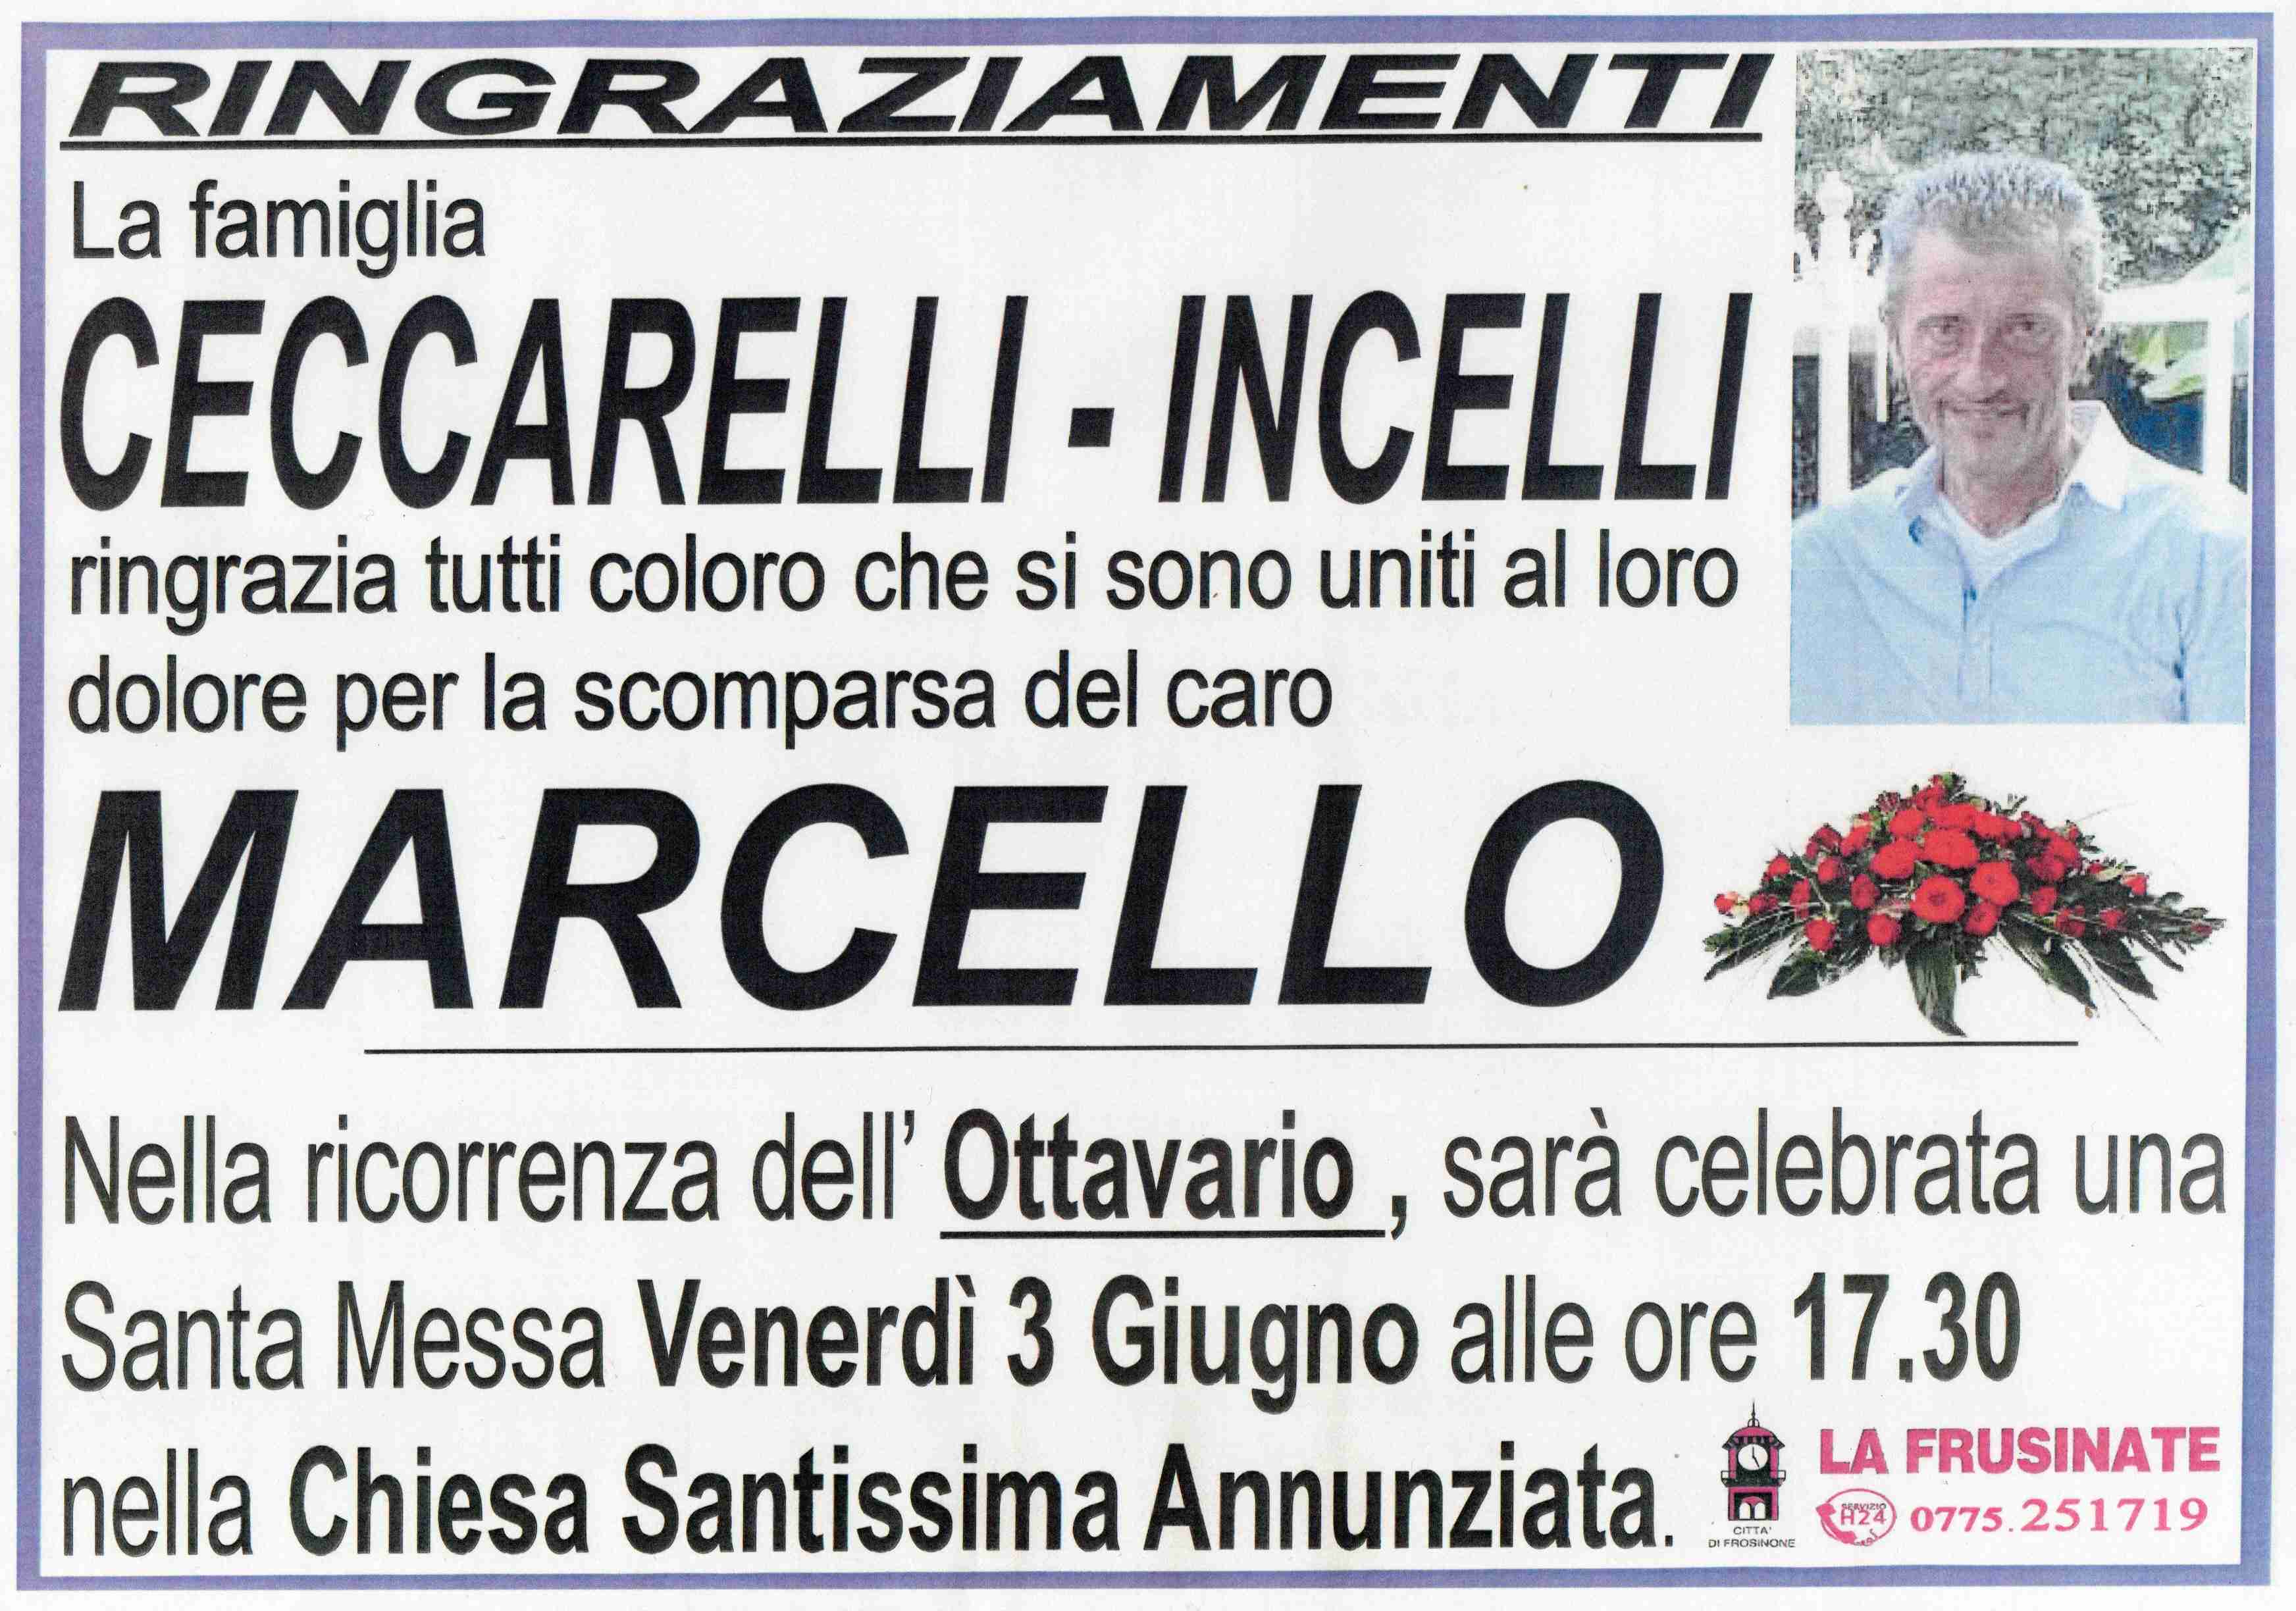 Marcello Ceccarelli